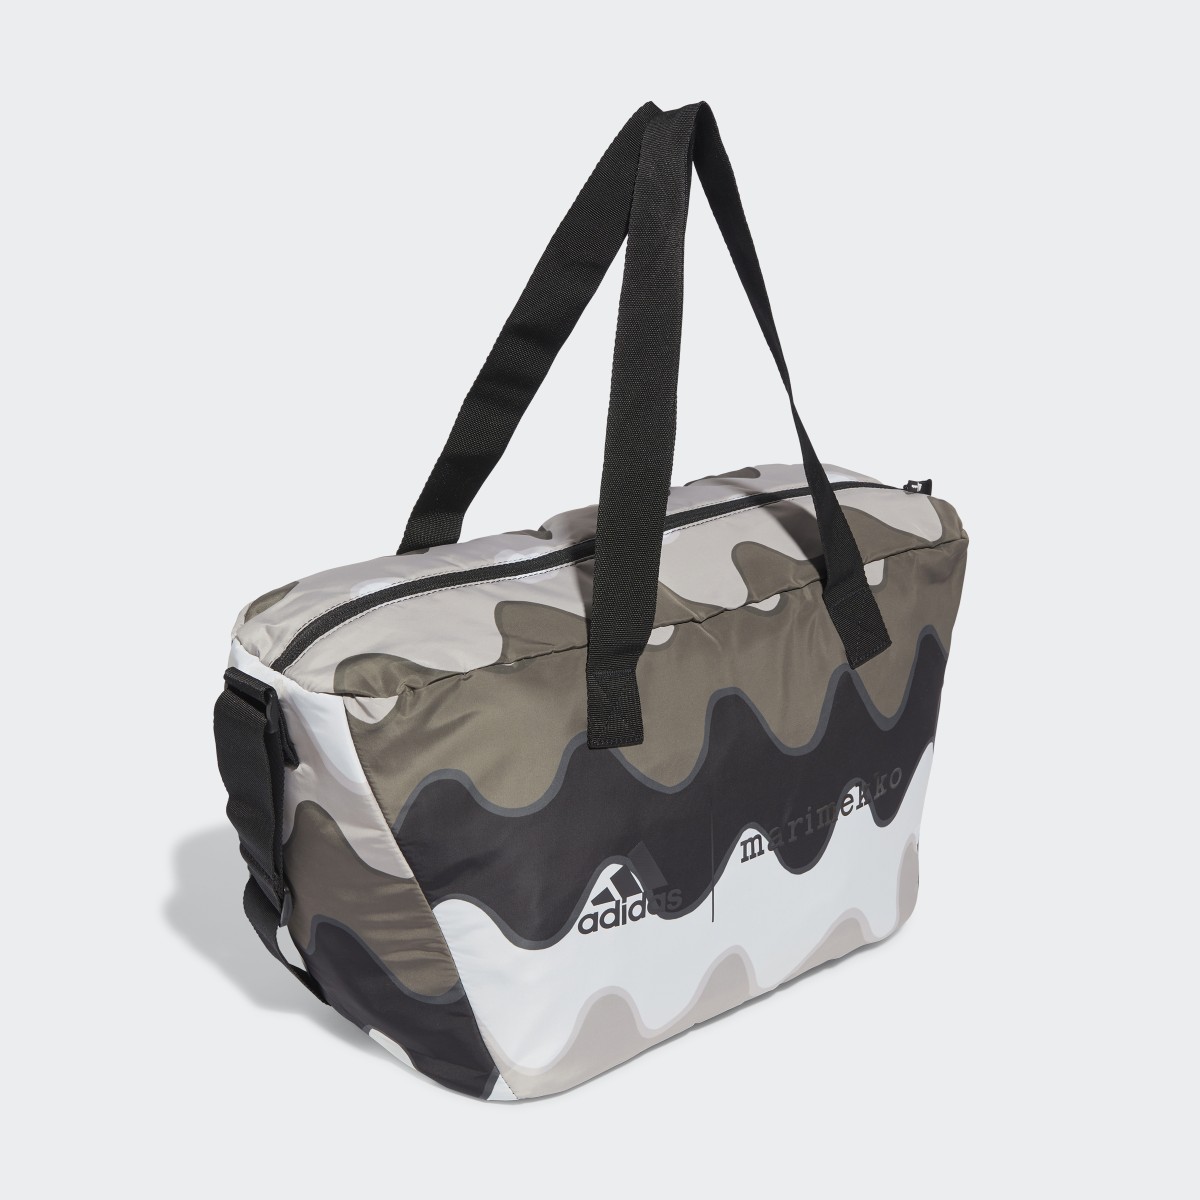 Adidas x Marimekko Shopper Designed to Move Training Bag. 4